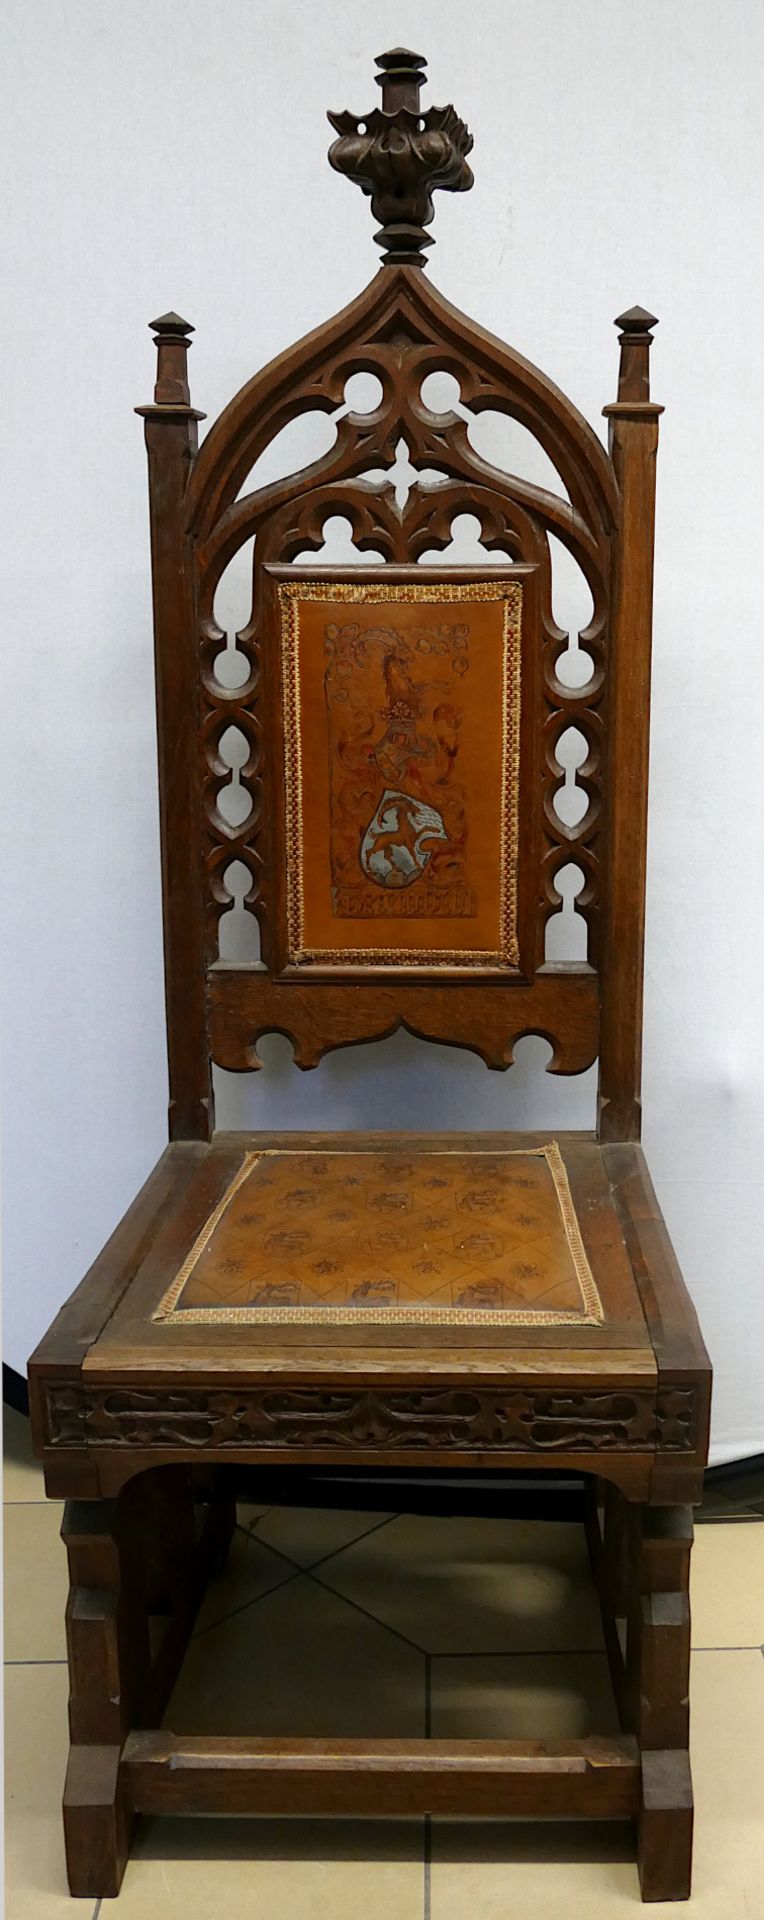 5 Stühle im neogotischen Stil 20. Jh. je mit durchbrochen gearbeiteten Rückenlehnen und Wappen auf L